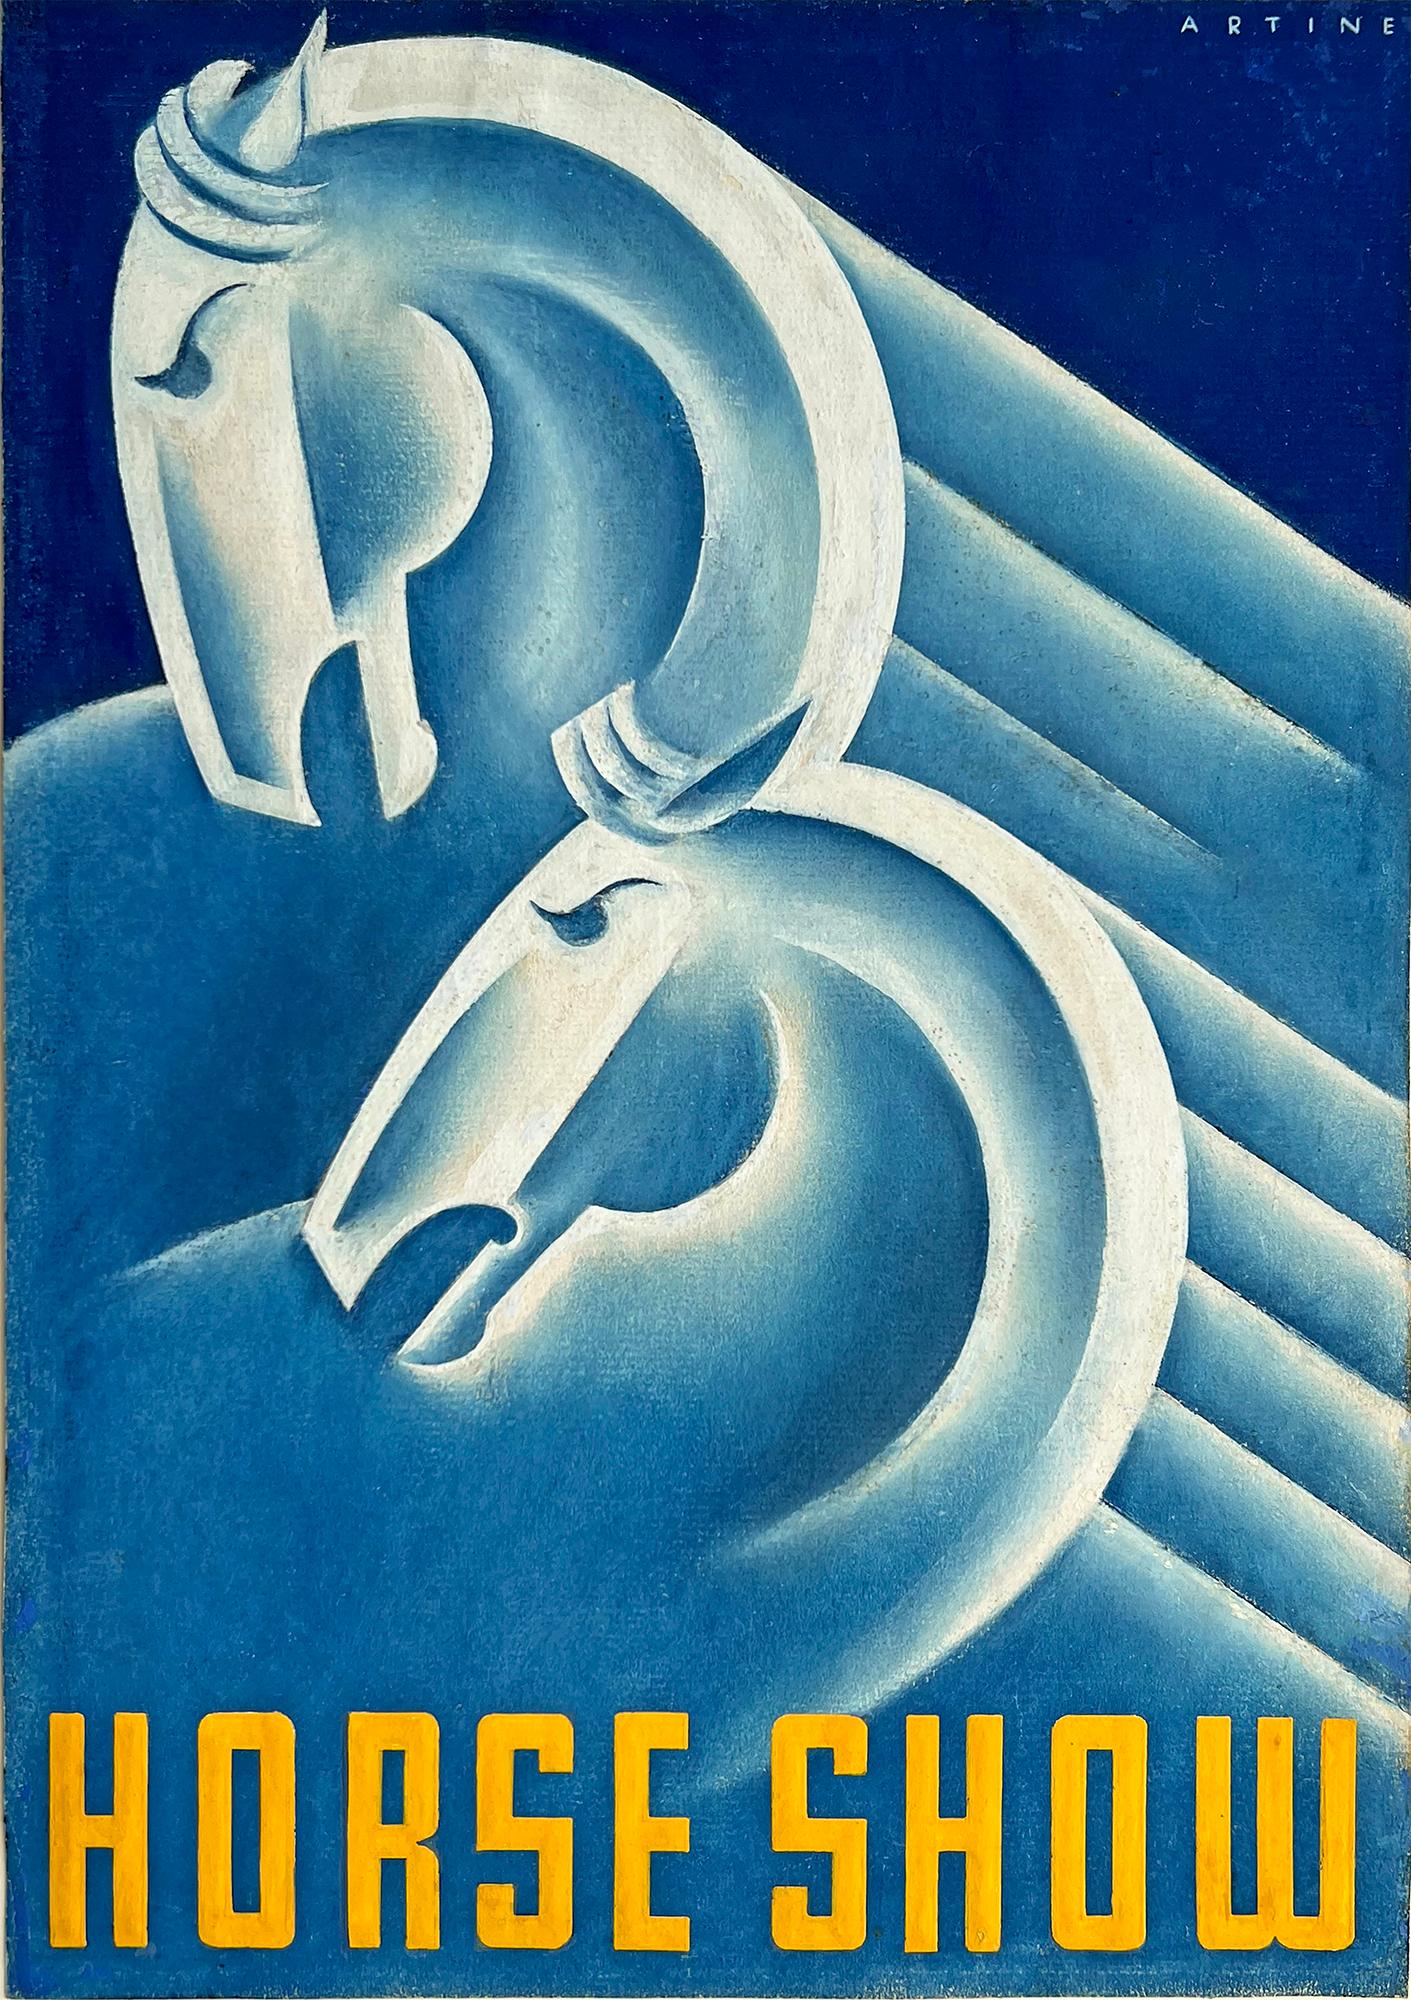 Des chevaux Art Déco en bleu - Illustration d'un show de chevaux par une illustratrice féminine 